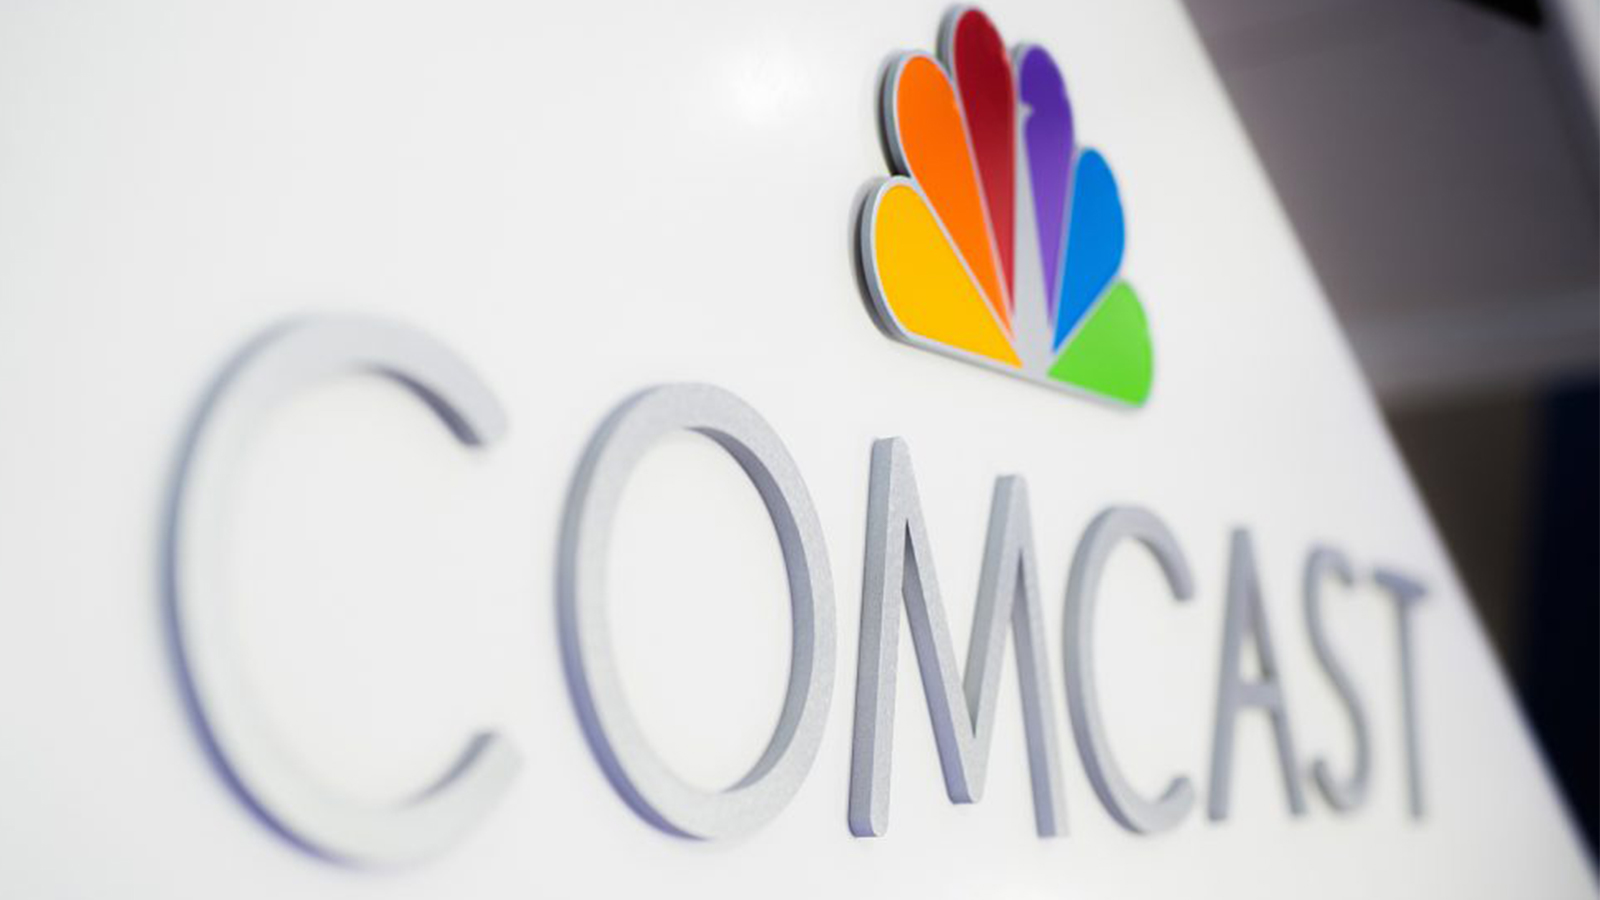 The Comcast logo.